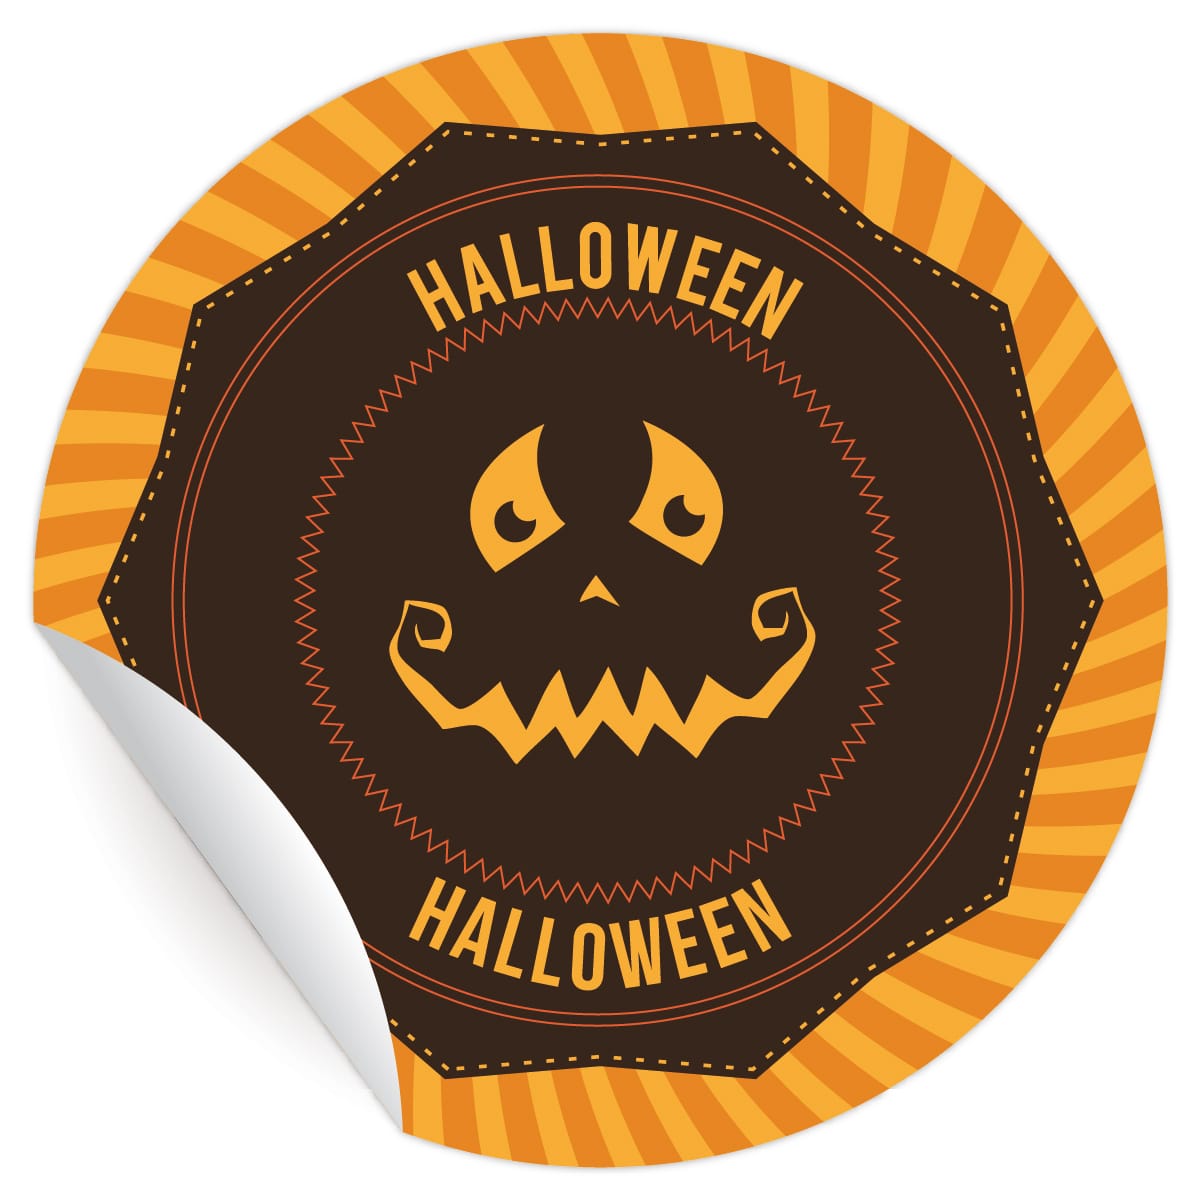 Kartenkaufrausch: gruselige Halloween Aufkleber aus unserer Halloween Papeterie in orange